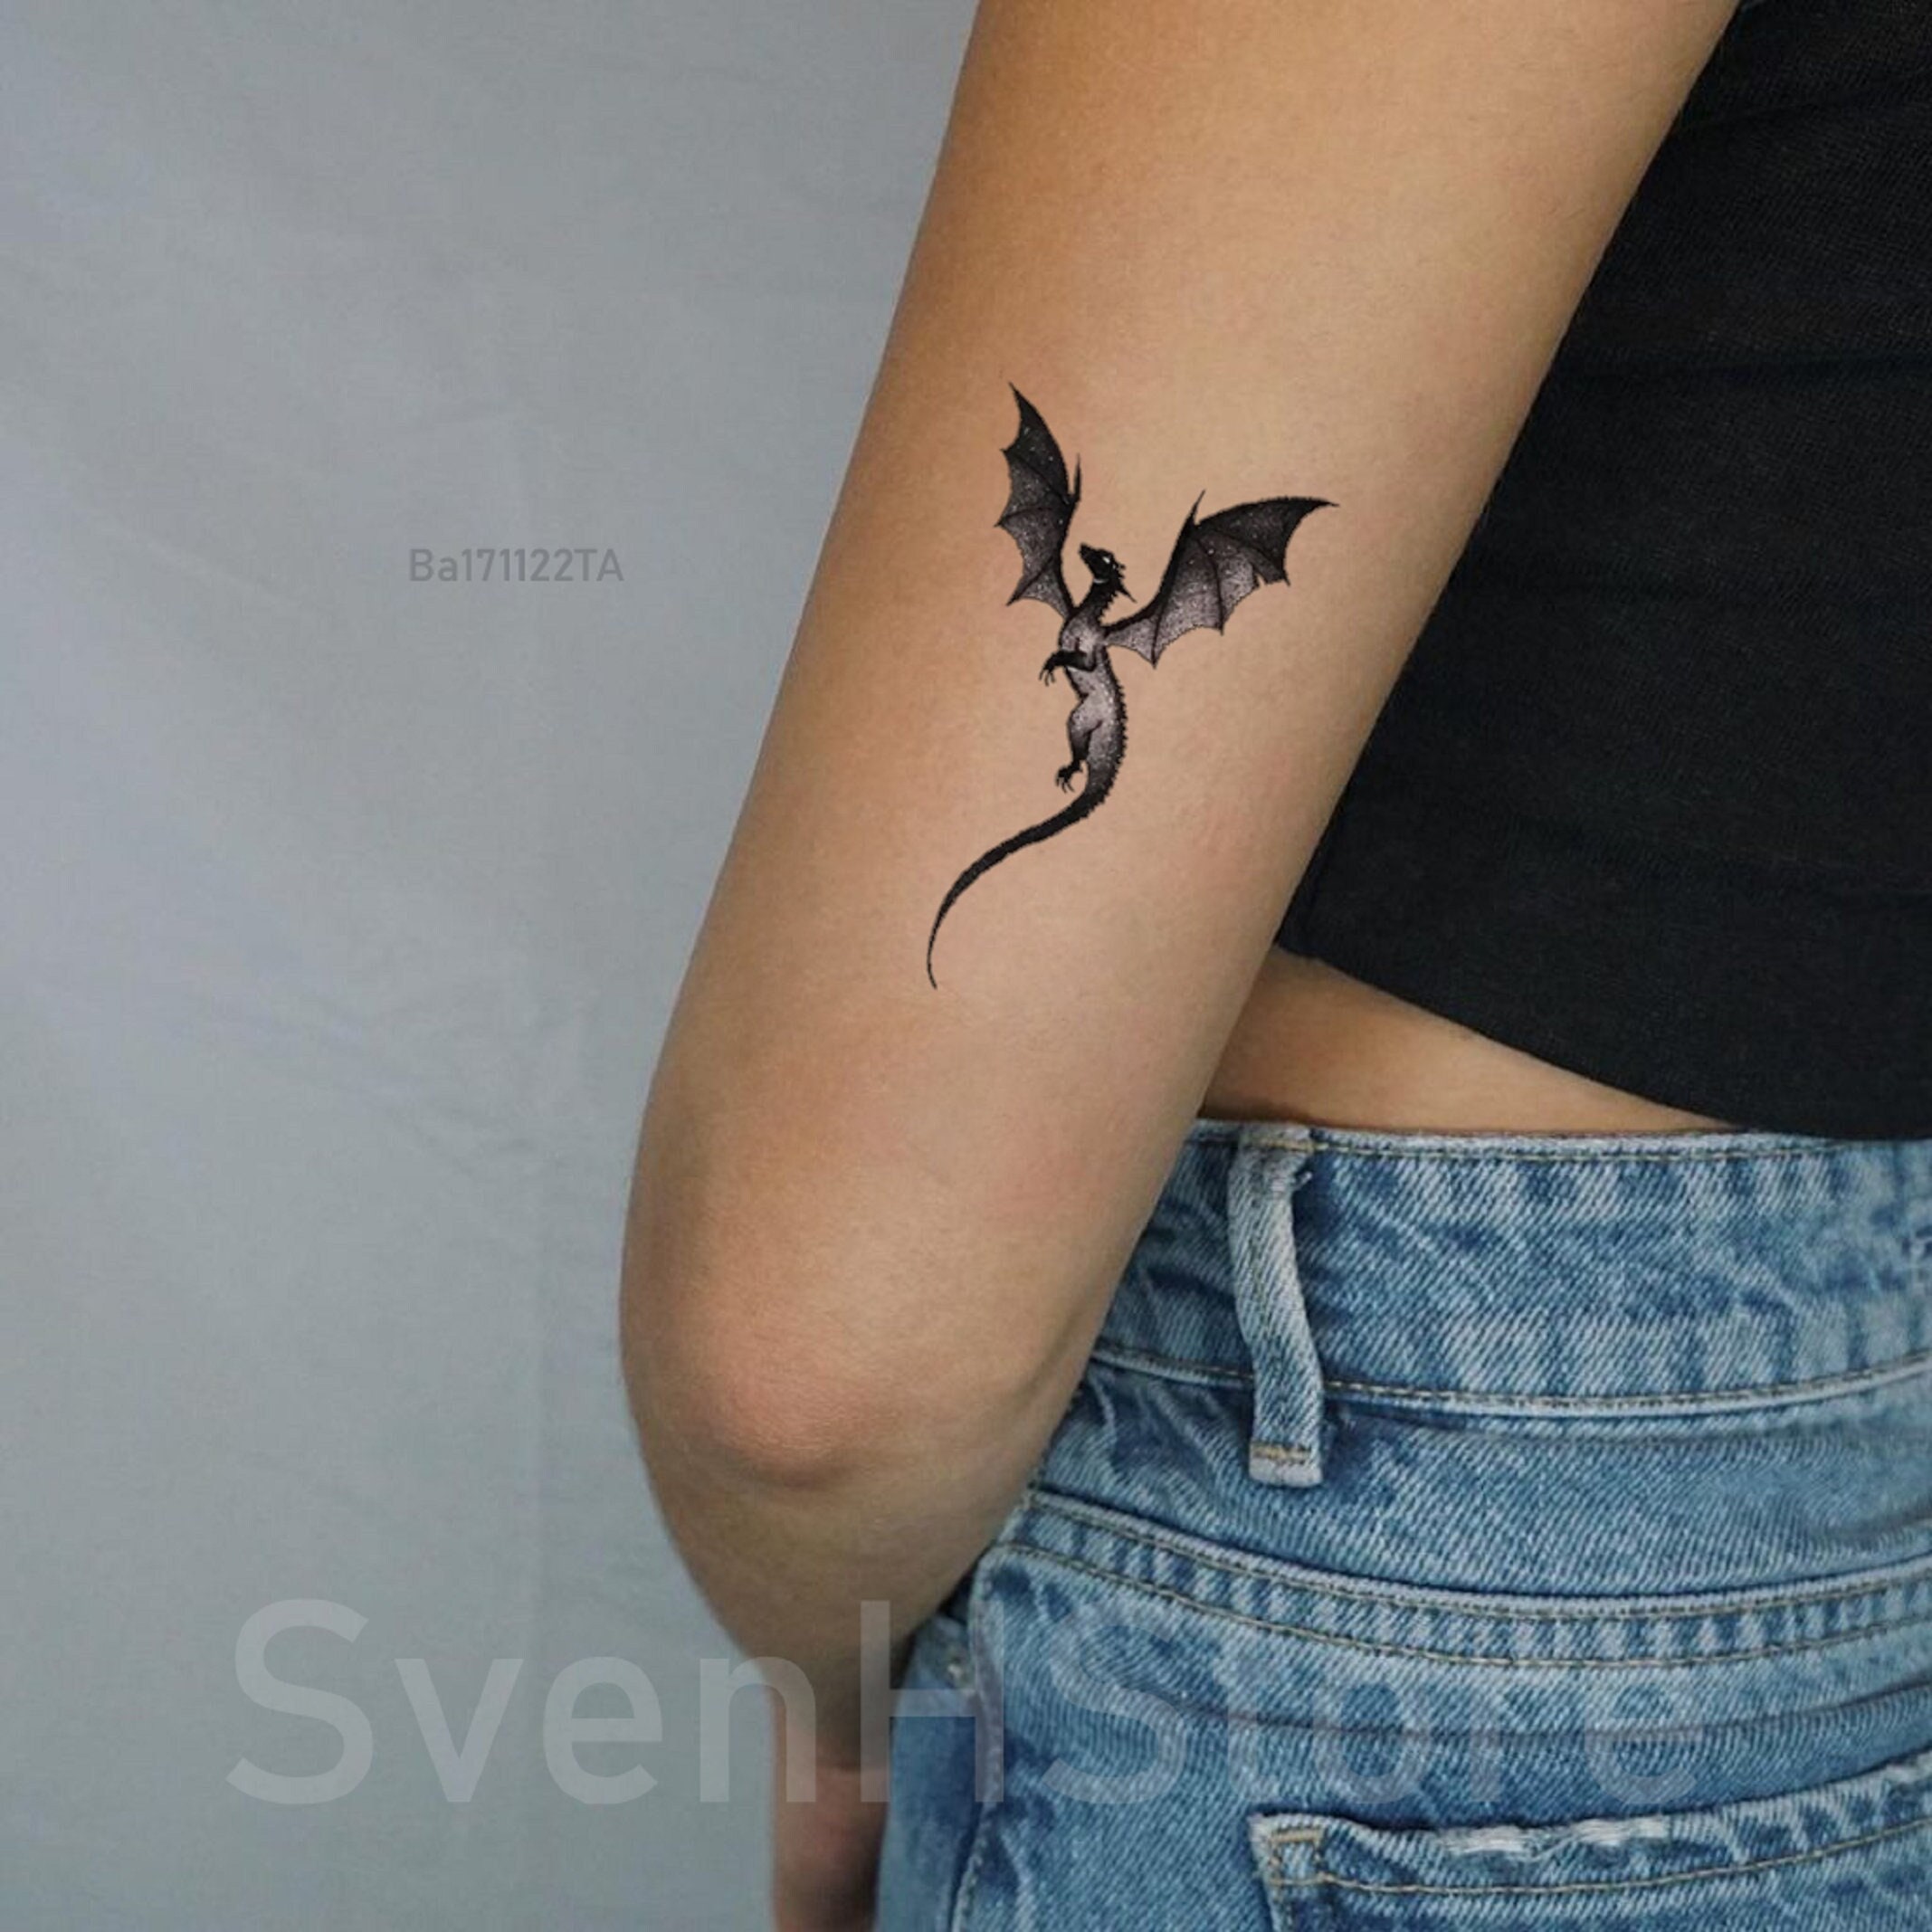 Kingsman tattoo  art studio on Twitter Minimalist dragon tattoo  httpstcoI8q4TlBaQU  X